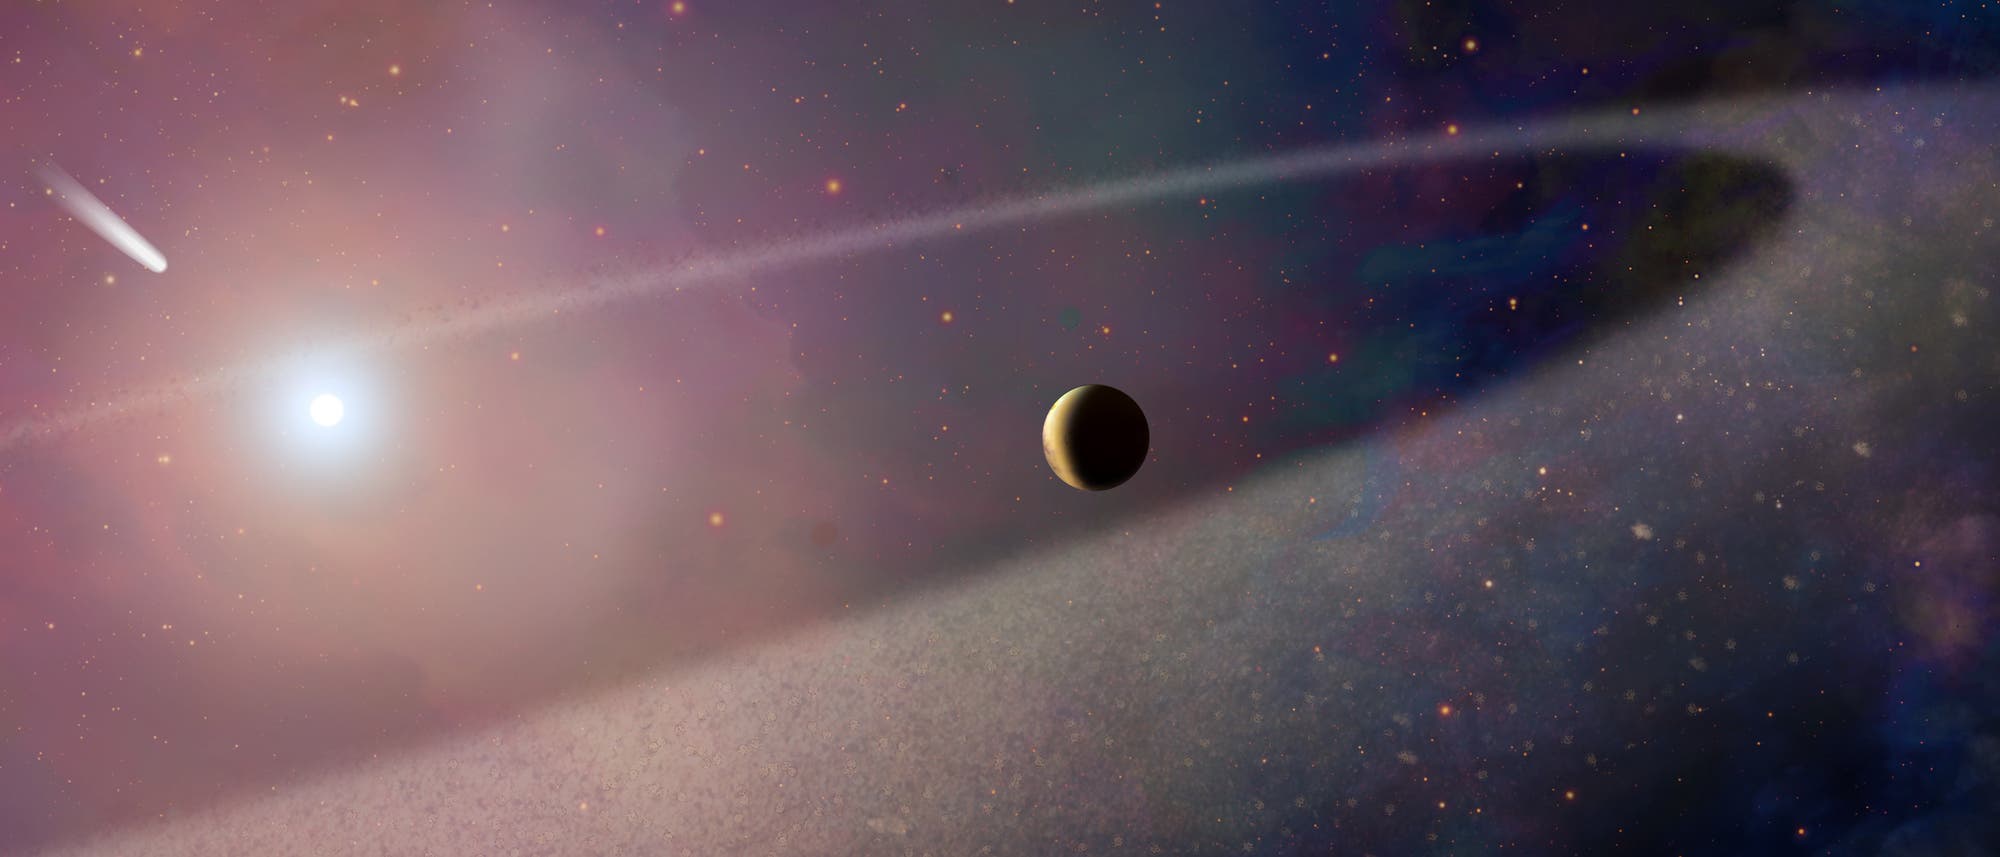 Komet nähert sich Weißem Zwerg (künstlerische Darstellung)